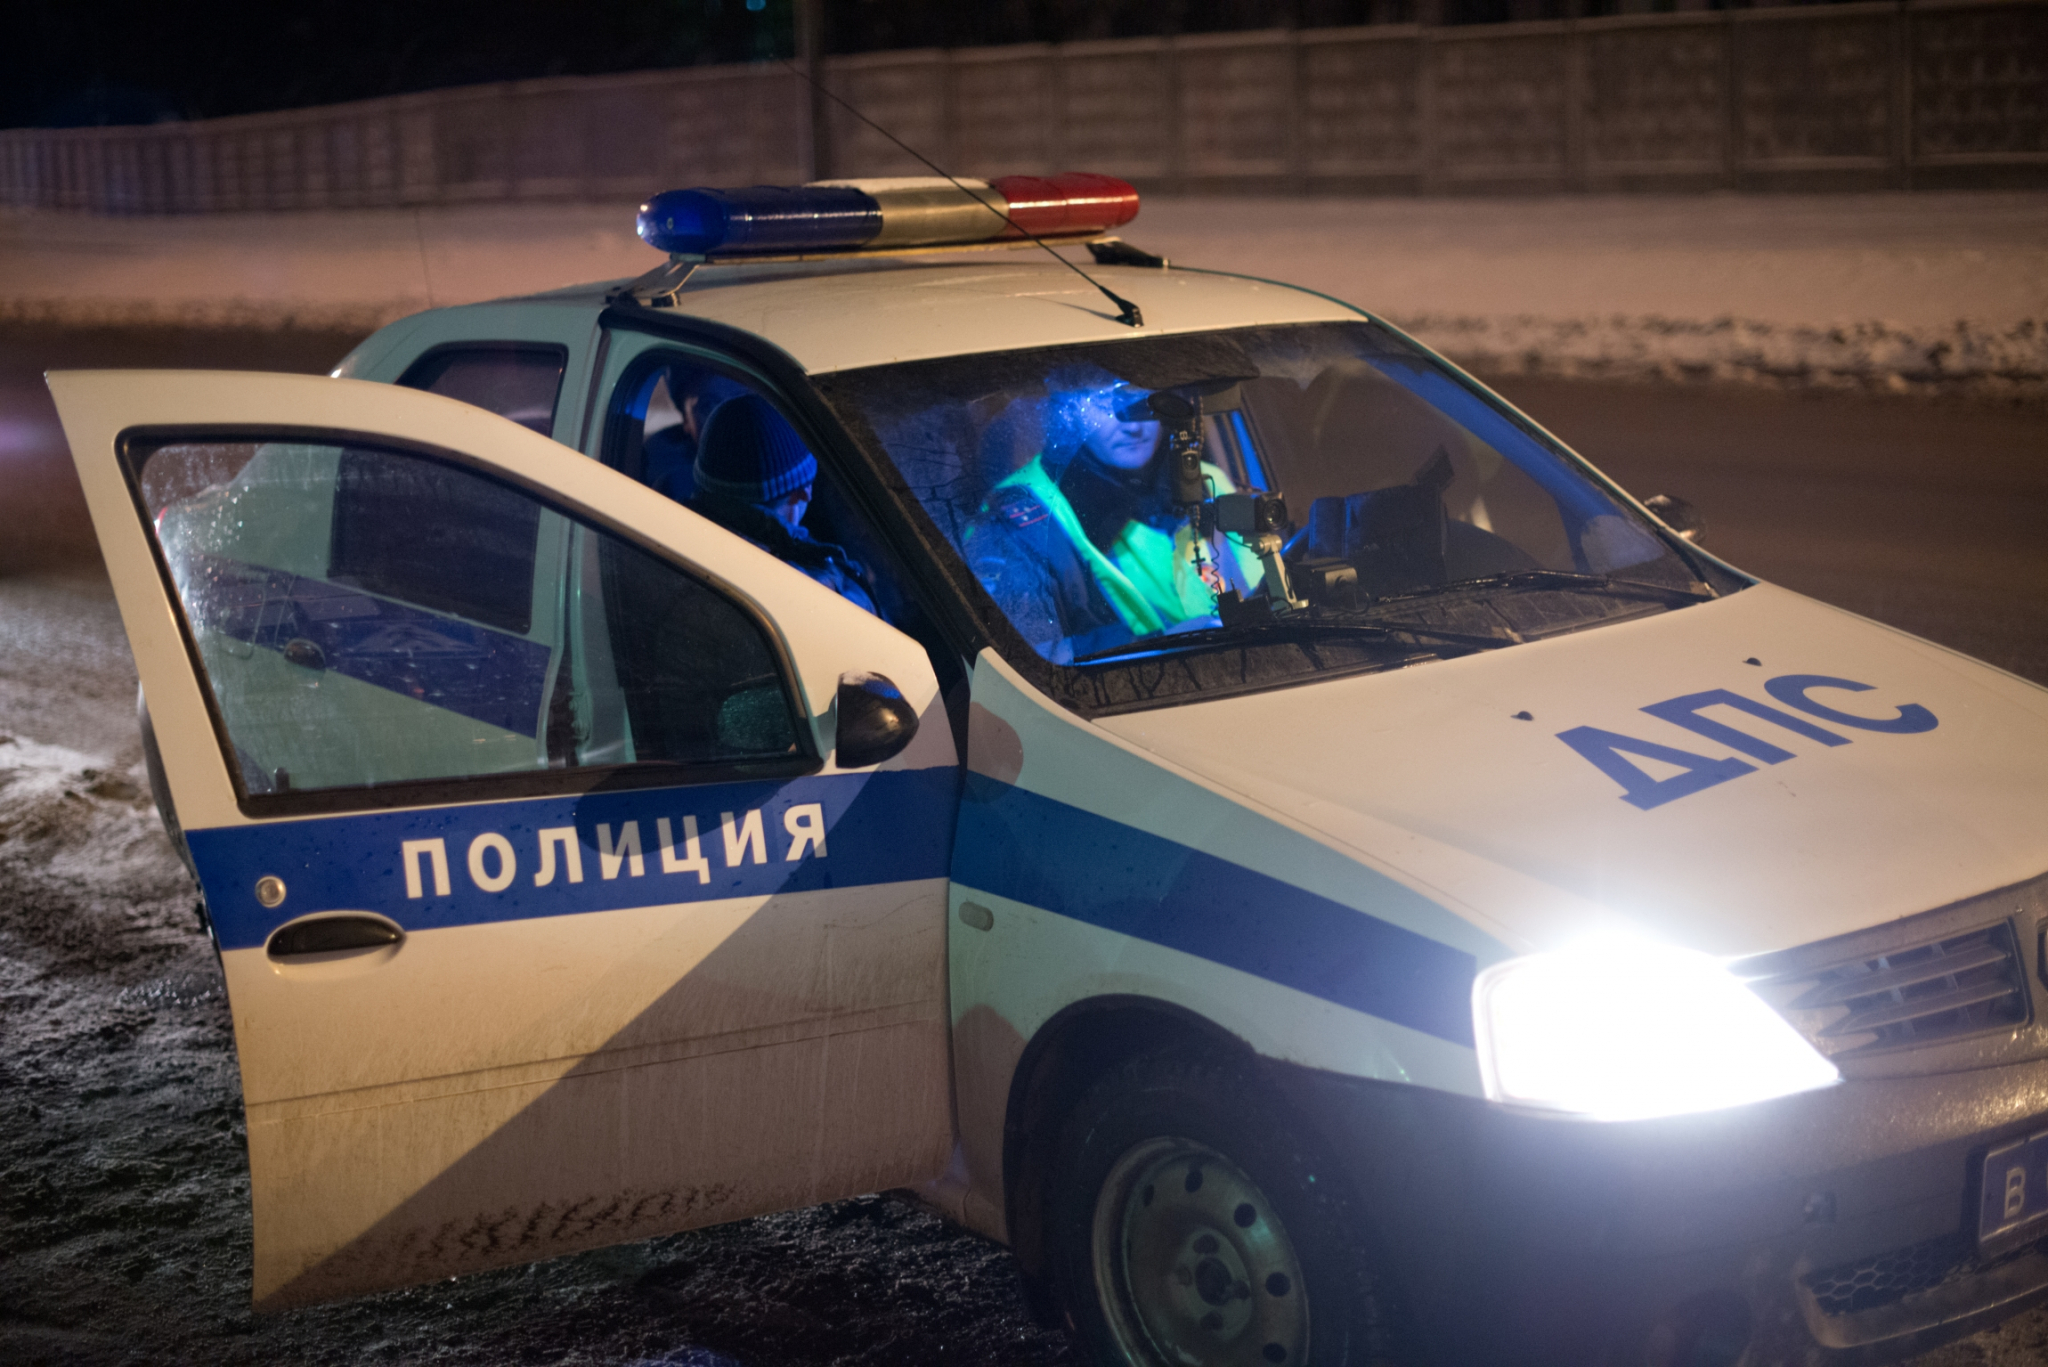 В Кирове произошло два ДТП с припаркованными авто